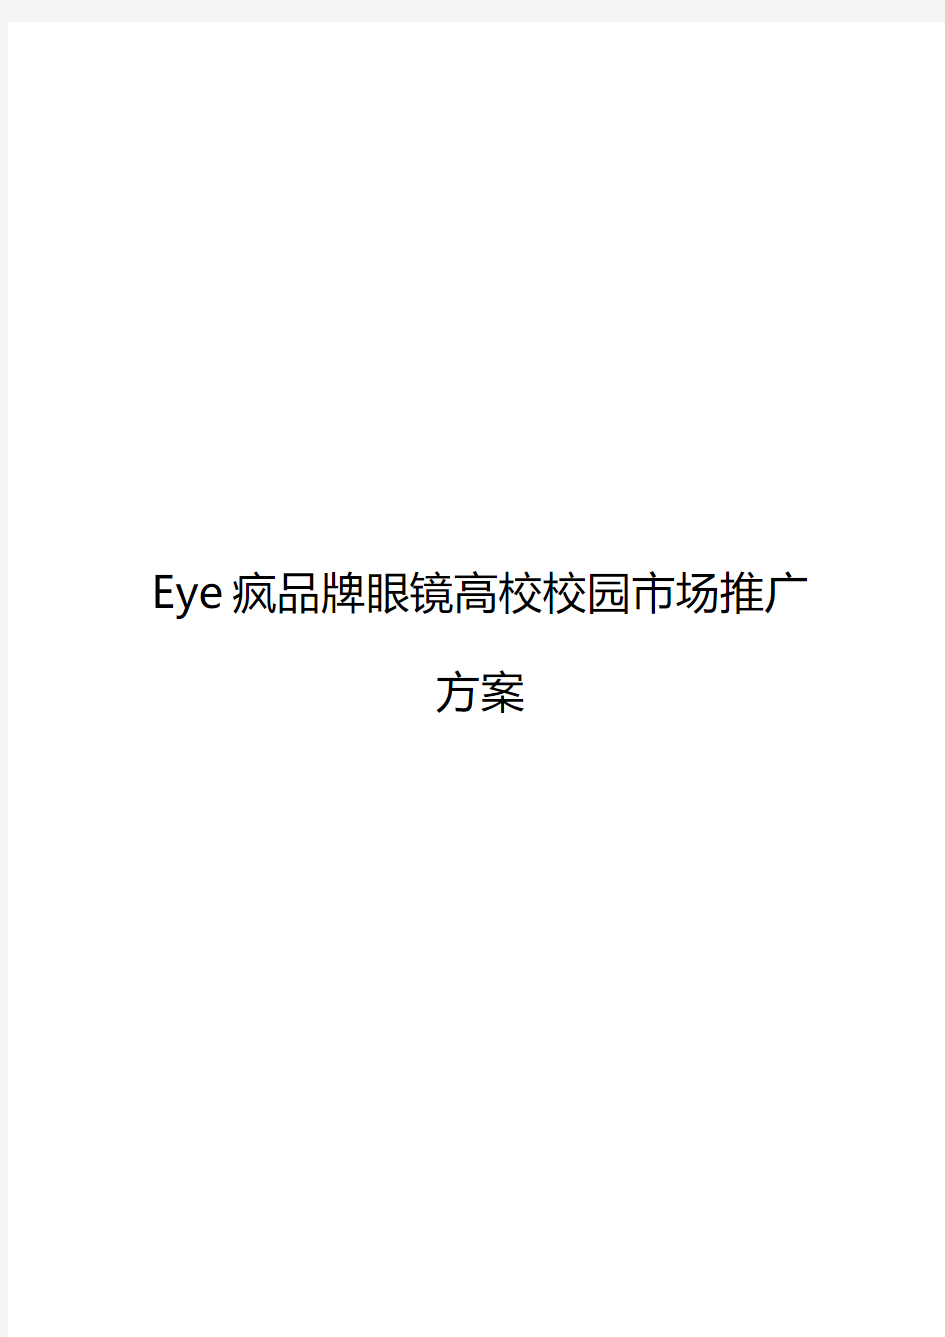 Eye疯连锁品牌眼镜店高校校园市场推广营销策划方案